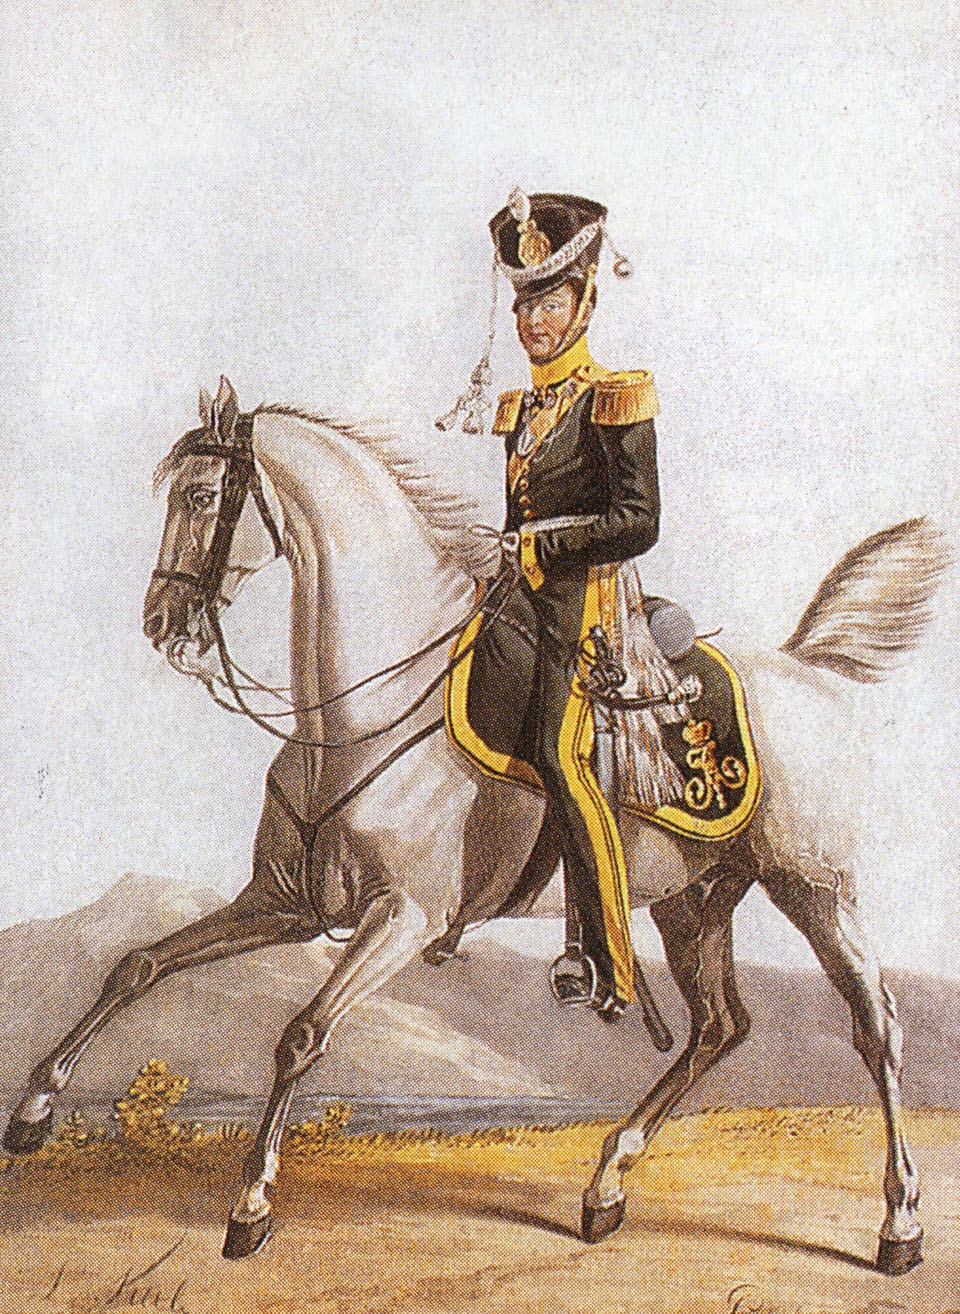 Л. Киль. "Штаб-офицер Смоленского драгунского полка". 1818.